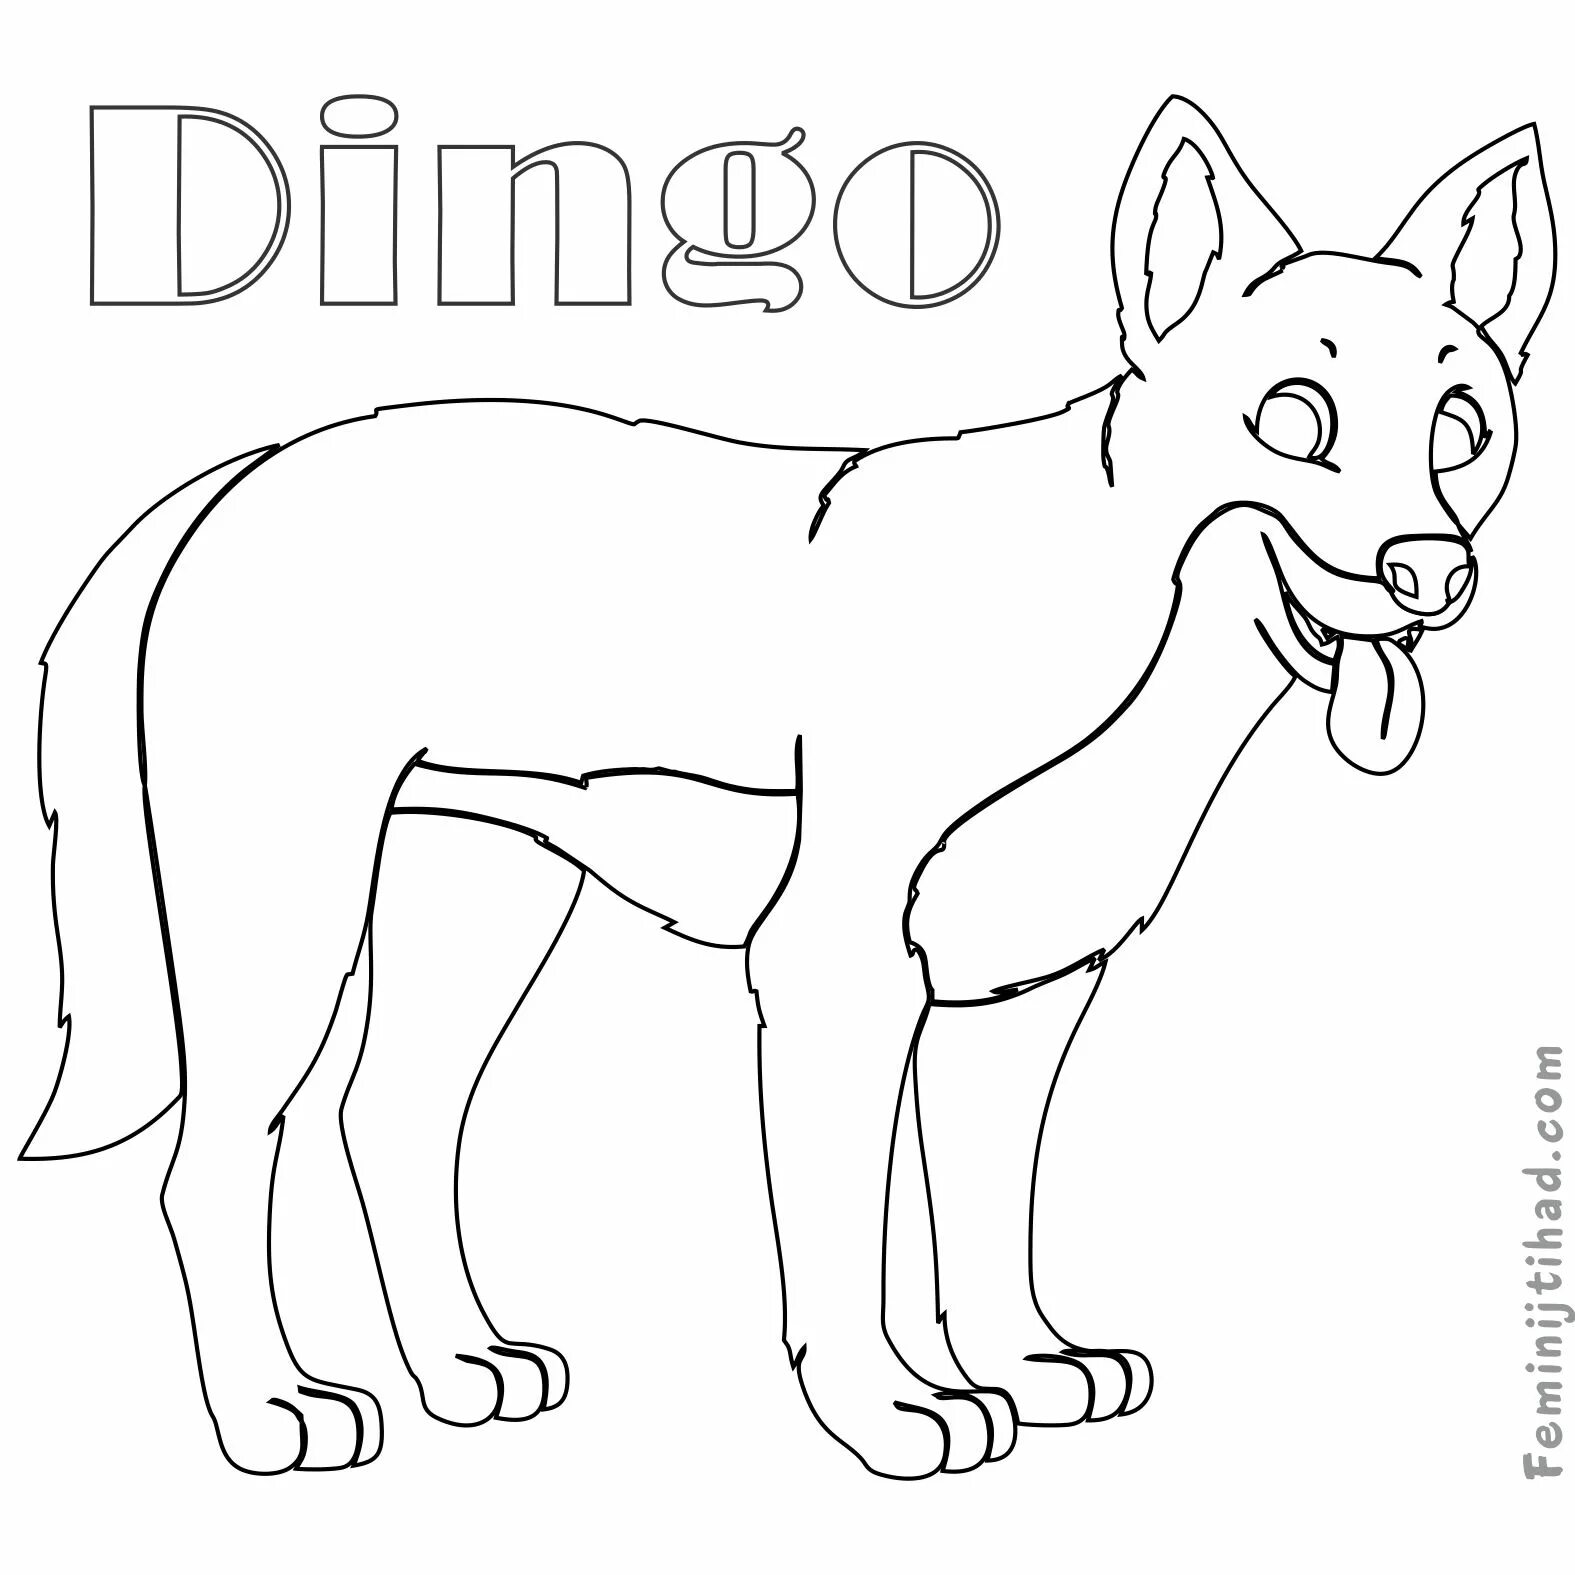 Dingo dog #4